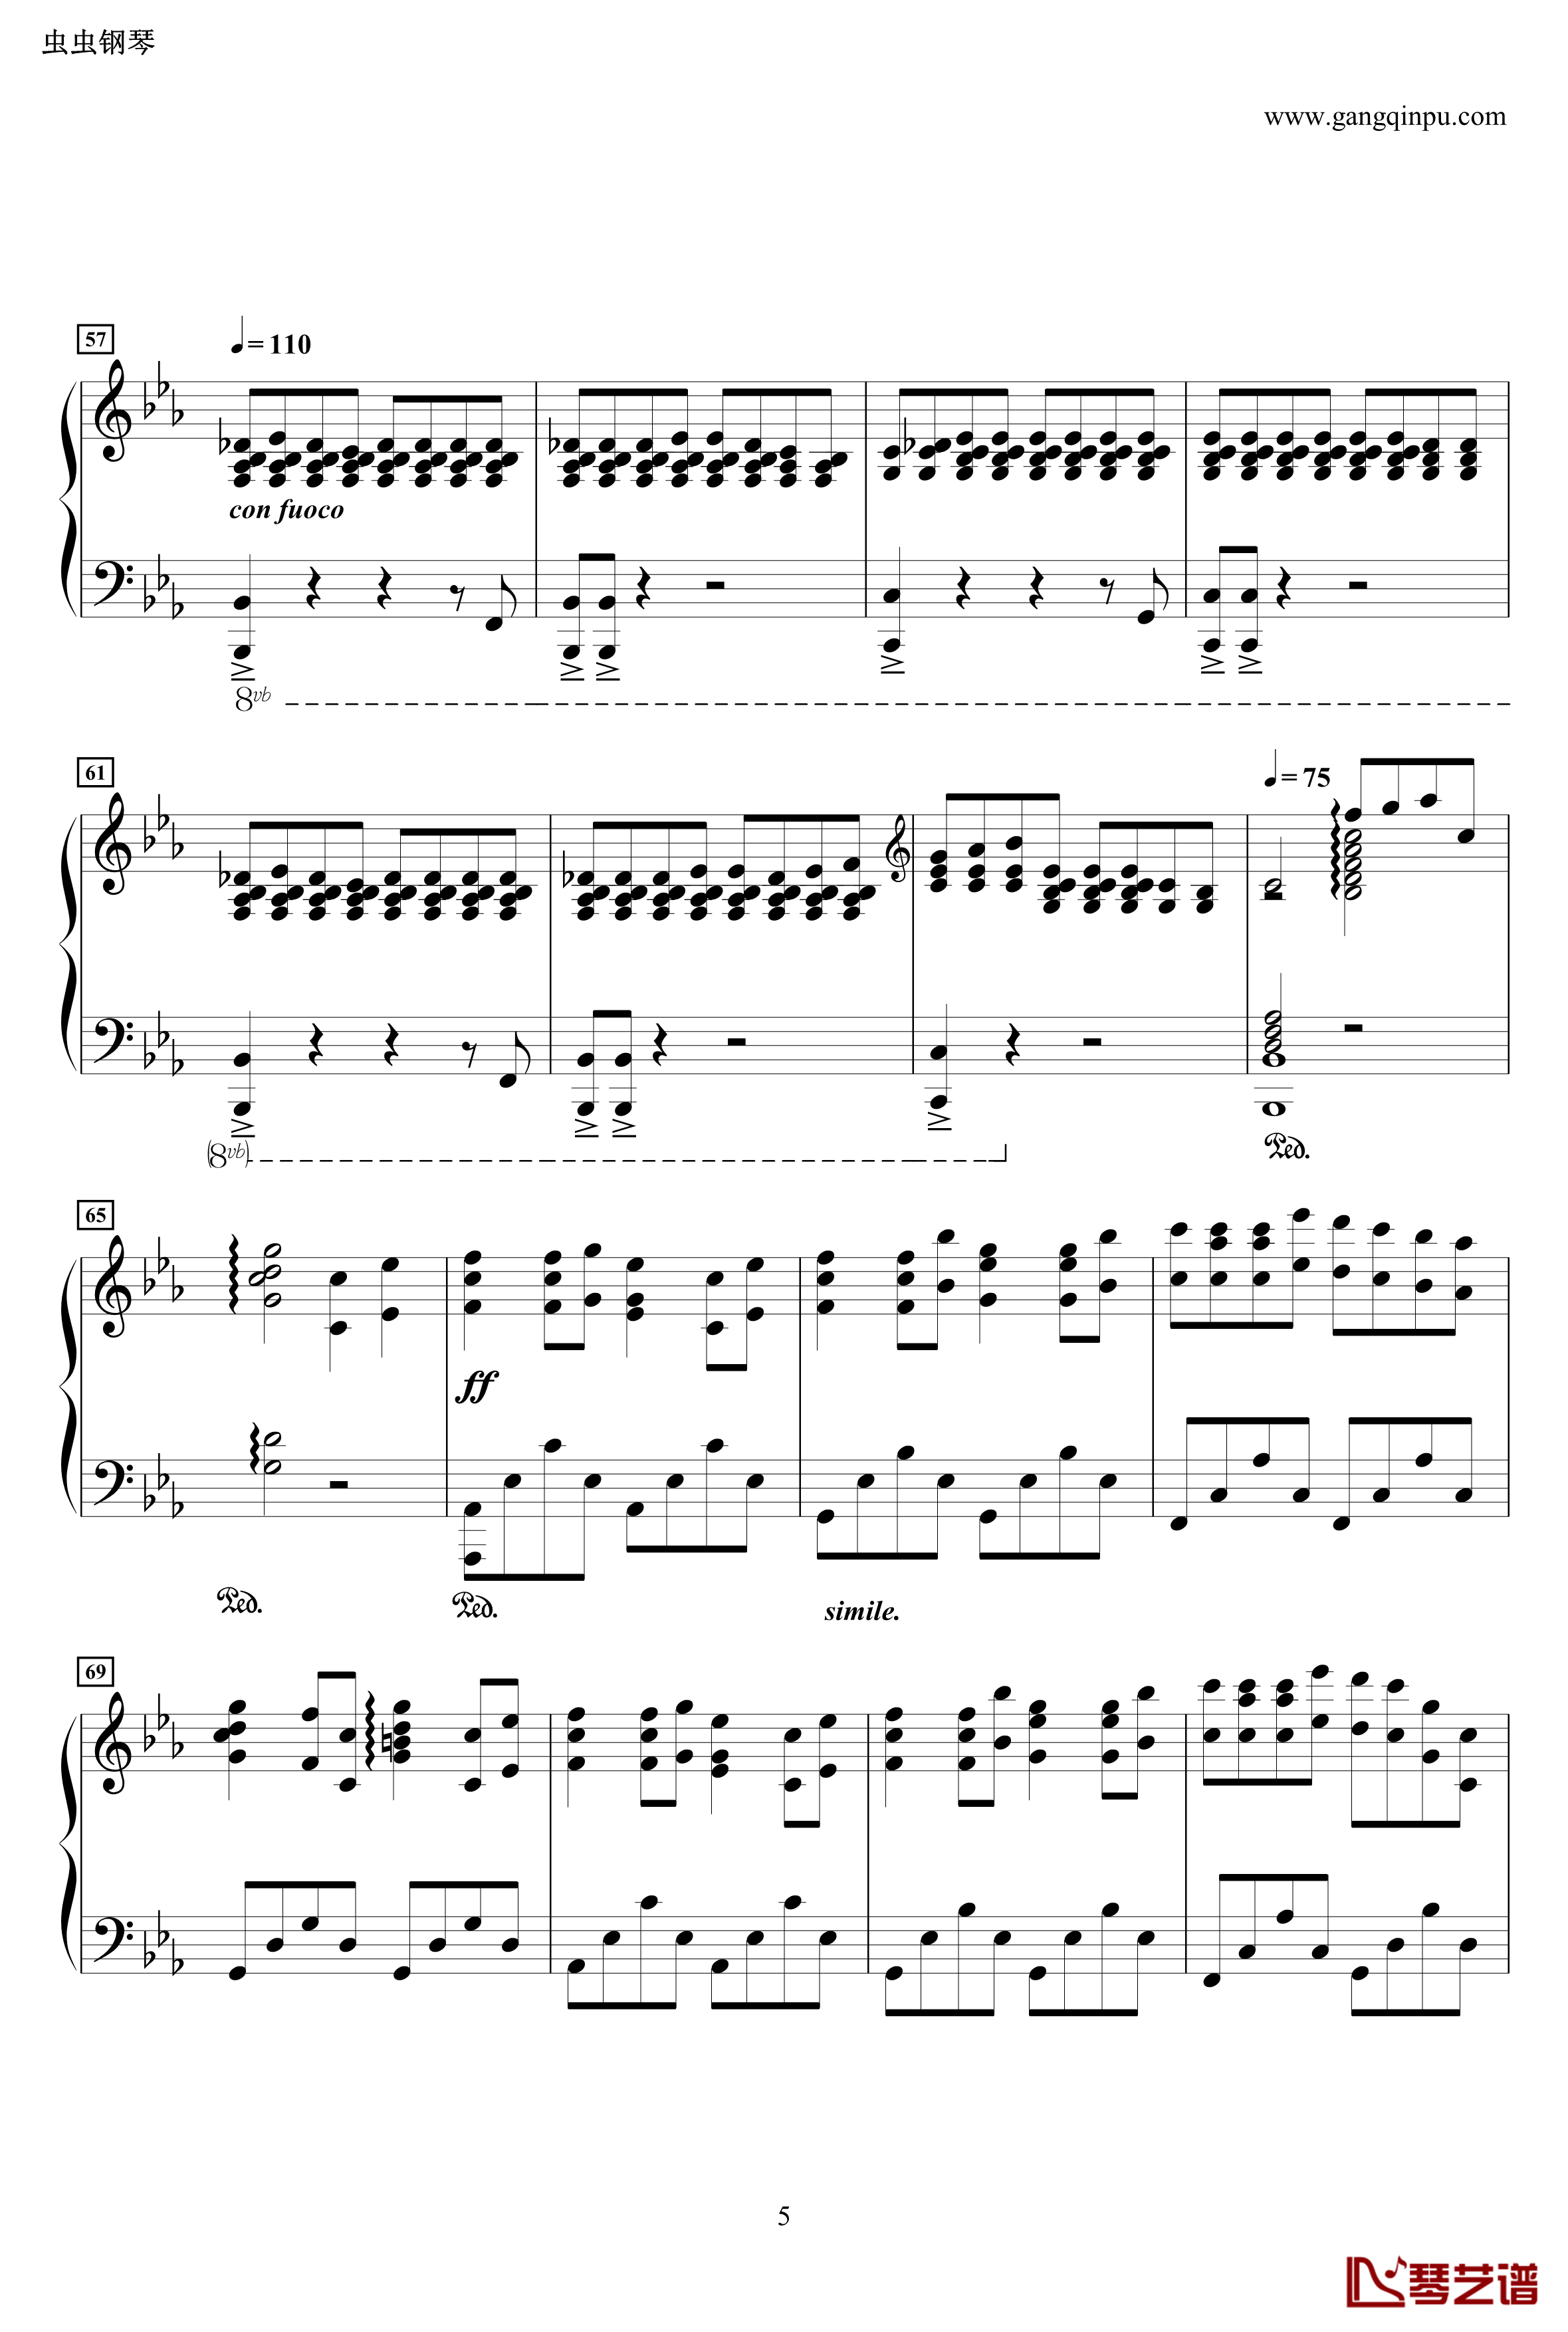 龙猫主题曲钢琴谱-风之甬道·風のとおり道·The Wind Forest·-·Best Original on Piano-久石让5